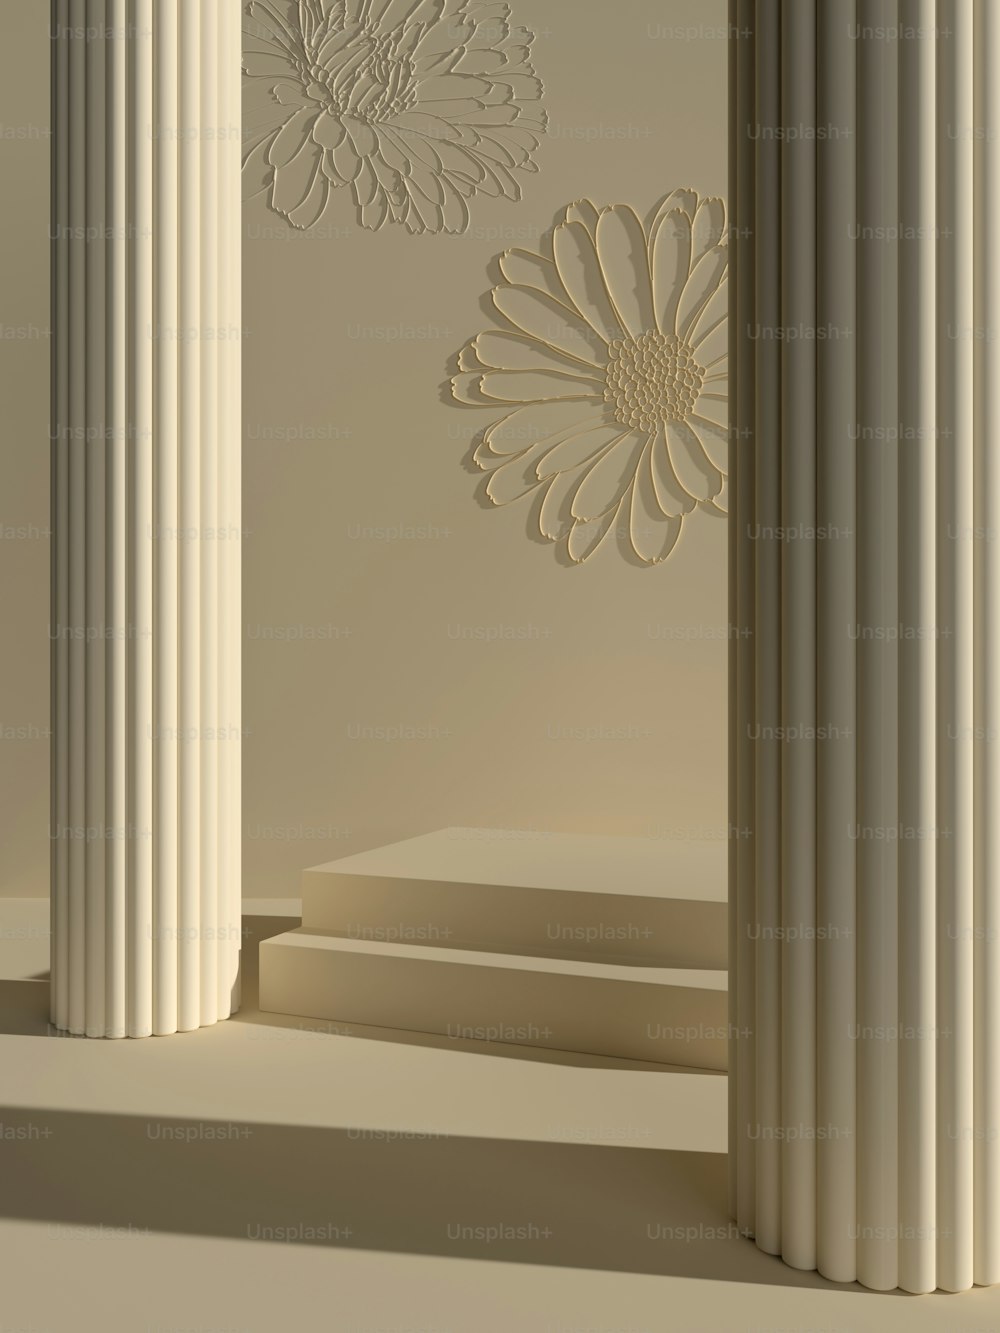 Un grupo de pilares blancos con una flor en la pared